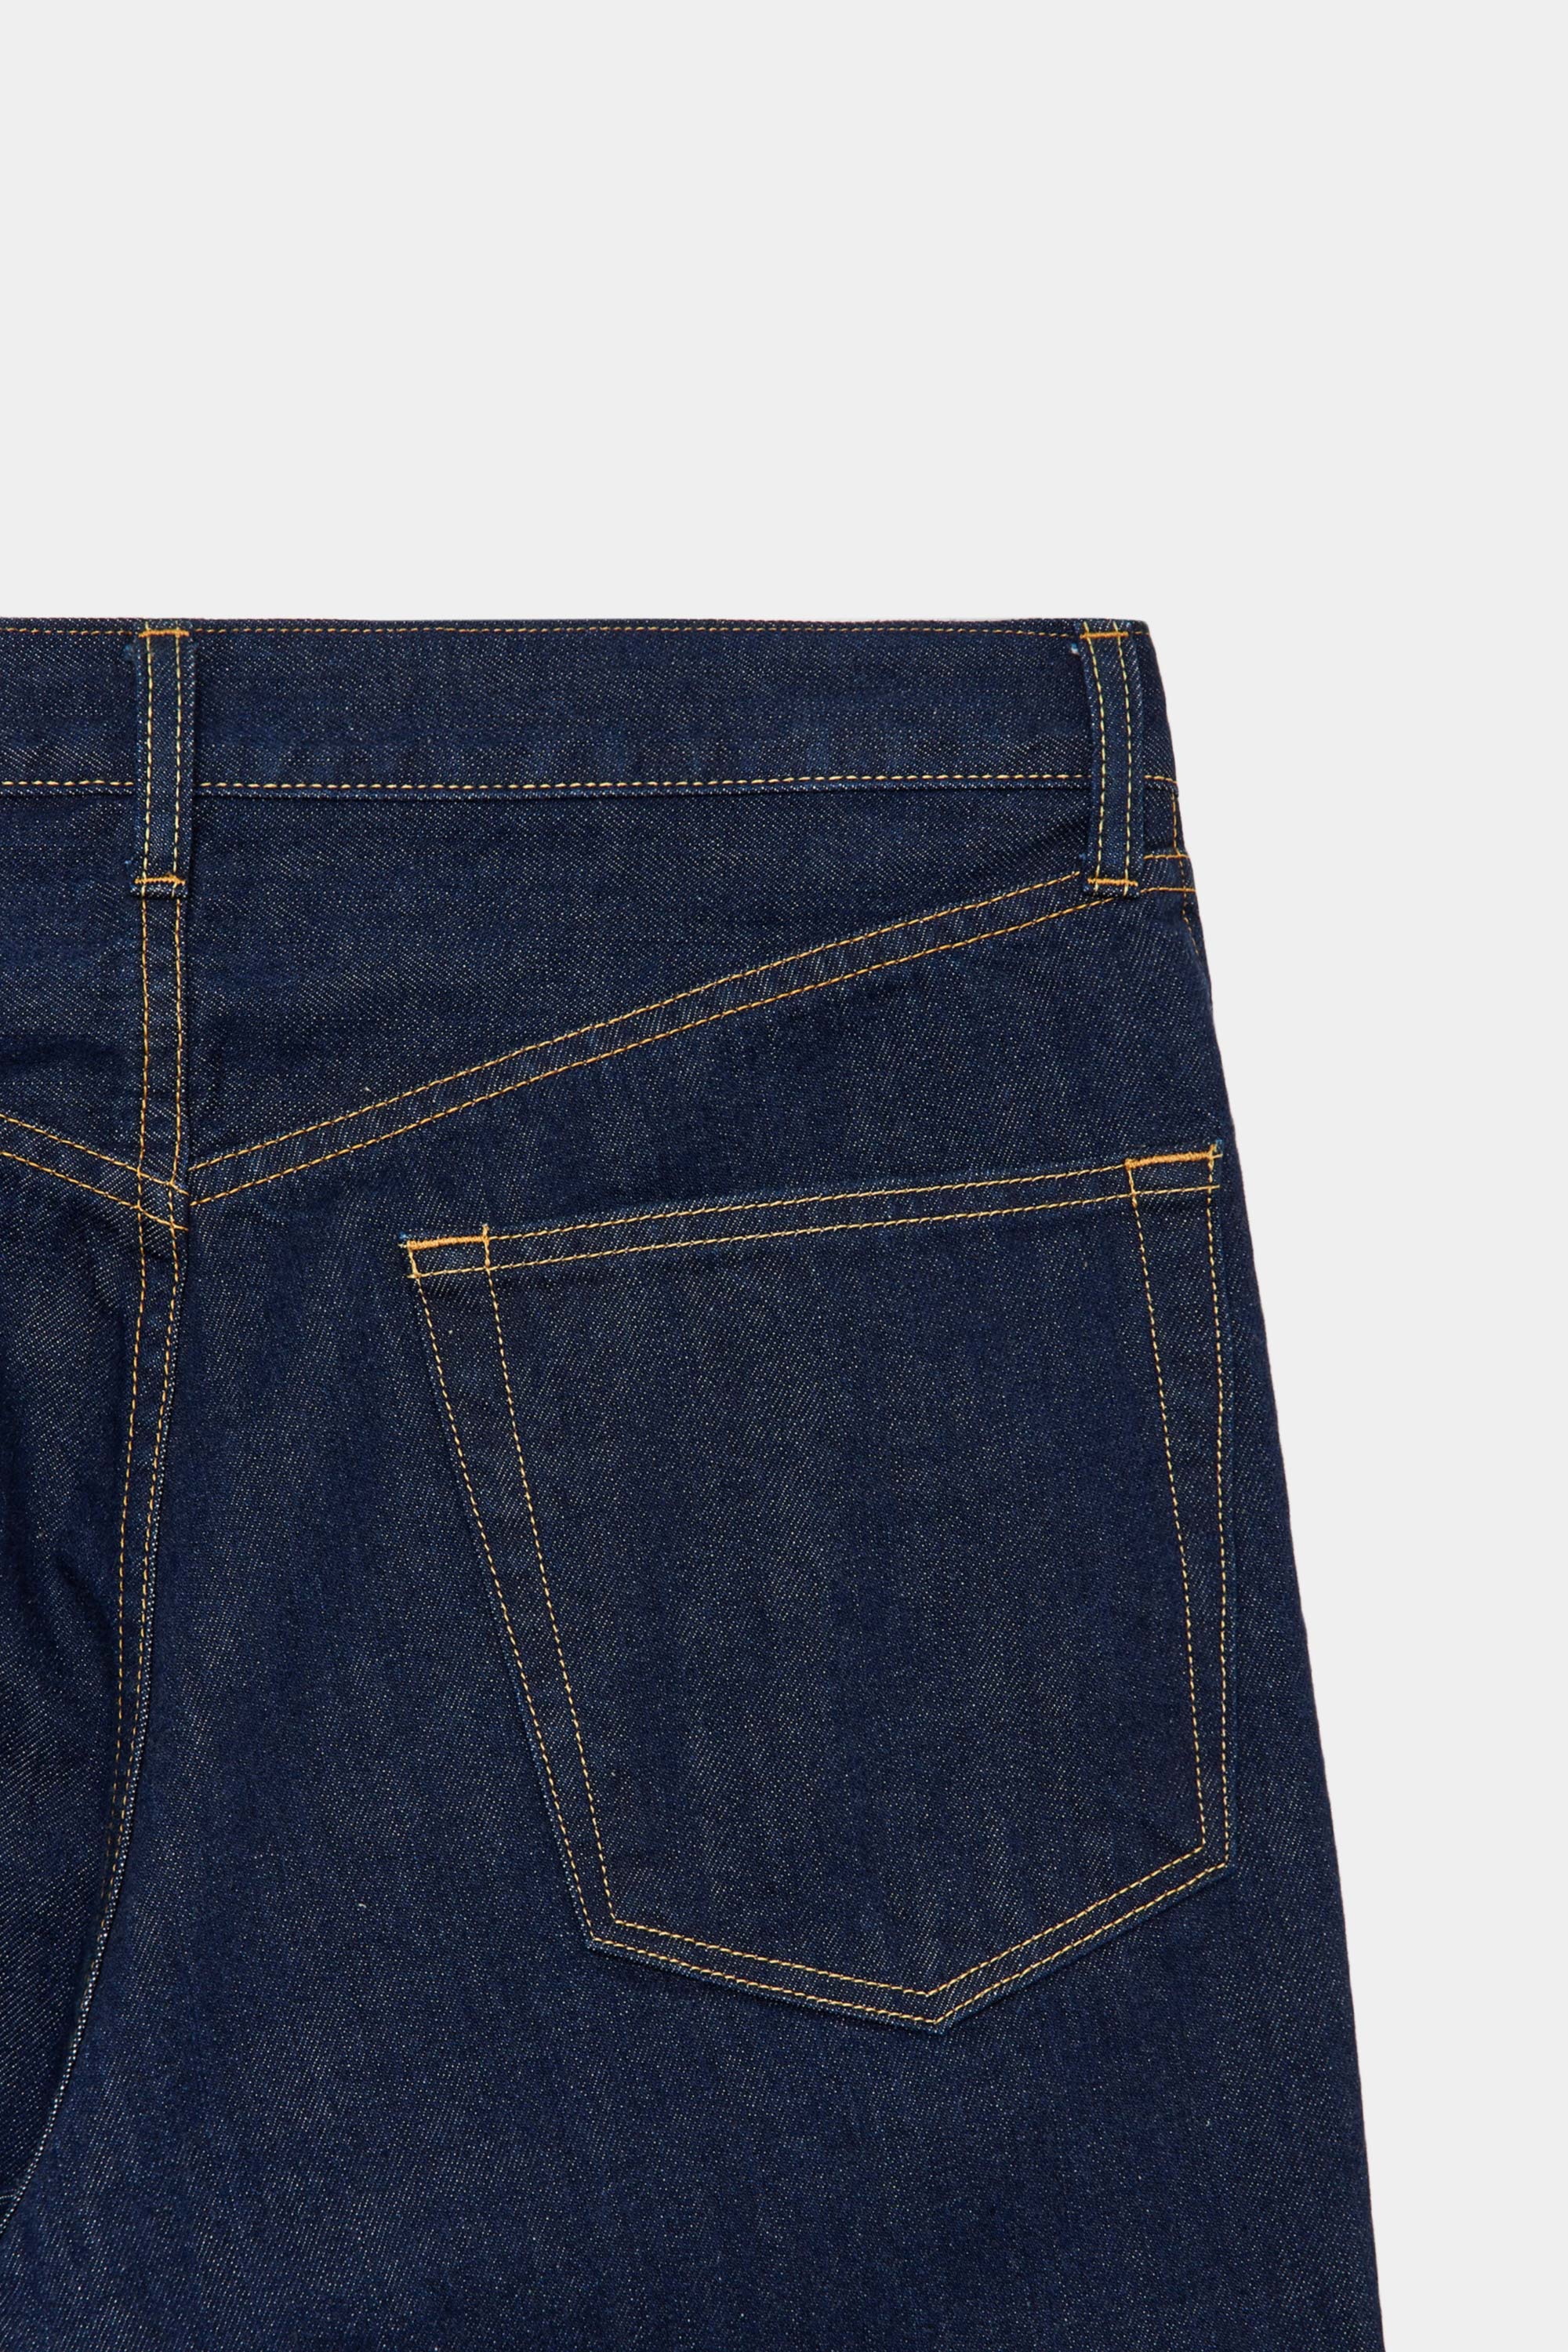 人気を誇る デット 美品 Regular Fit Organic Cotton Jeans 30x30 GDM 